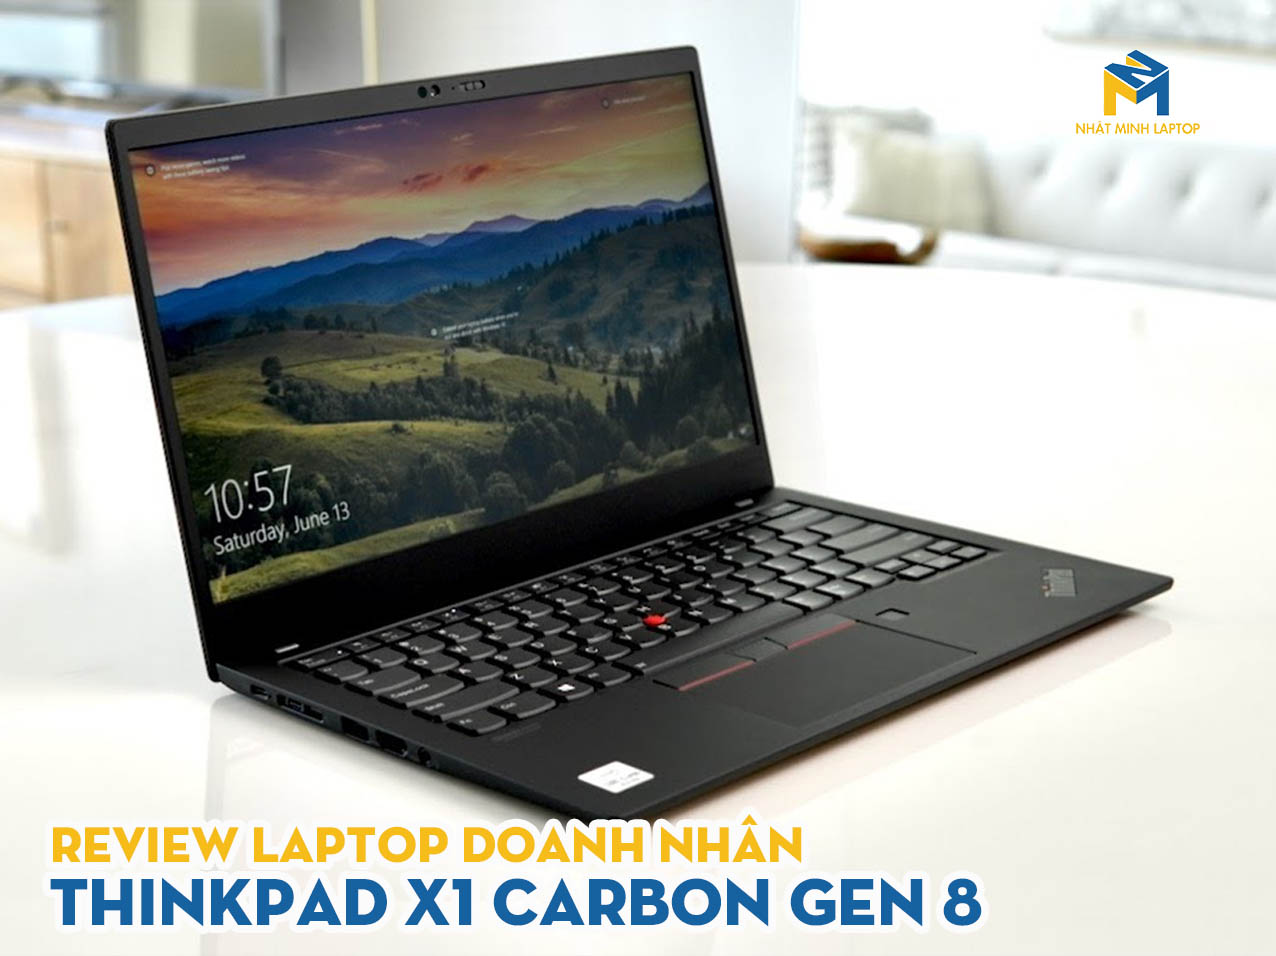 Đánh giá ThinkPad X1 Carbon Gen 8: Laptop mang đẳng cấp doanh nhân